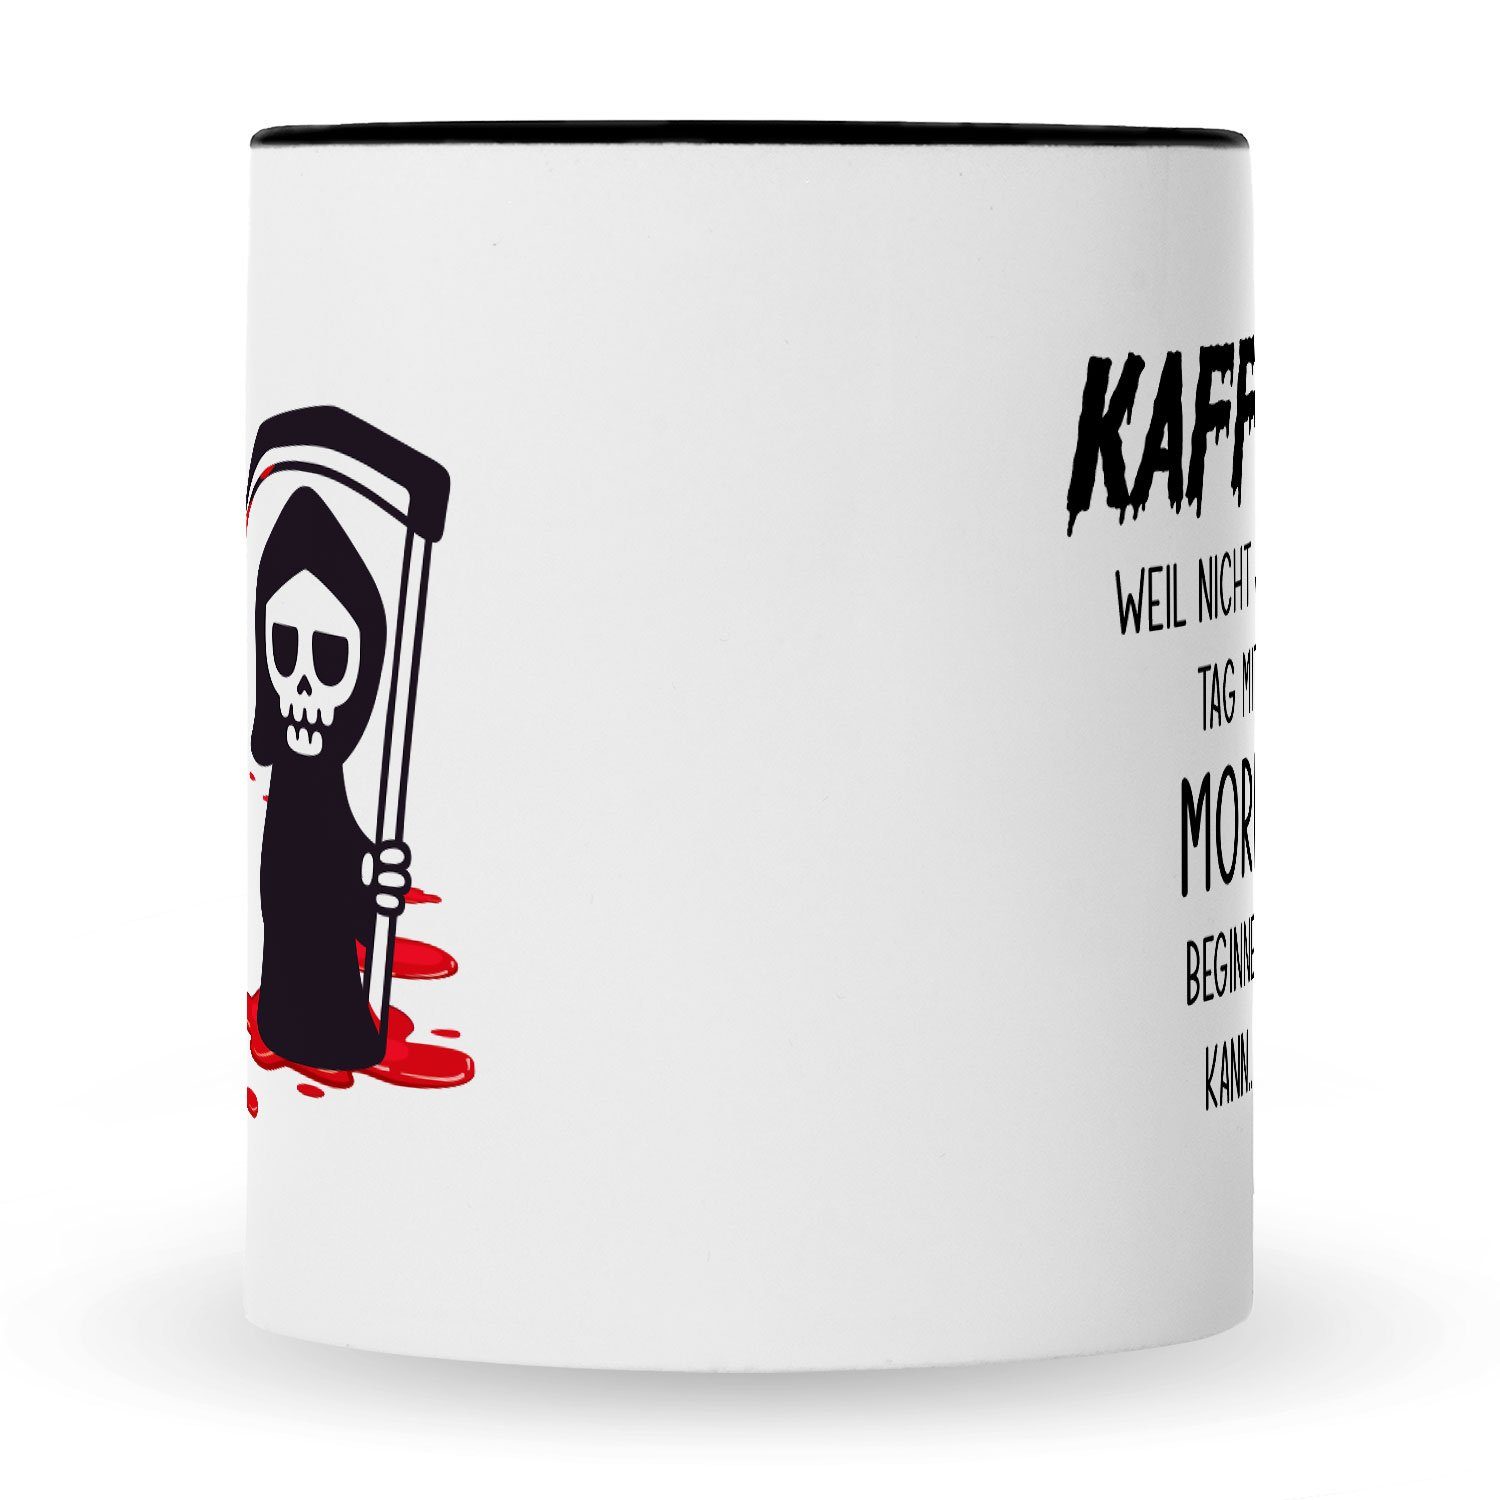 GRAVURZEILE Tasse Bedruckte jeder Mord Kollegen weil kann, Schwarz Geschenk nicht Kaffee - Weiß Büro für mit mit Tasse beginnen Lustiges Arbeit Tag Sensenmann Keramik